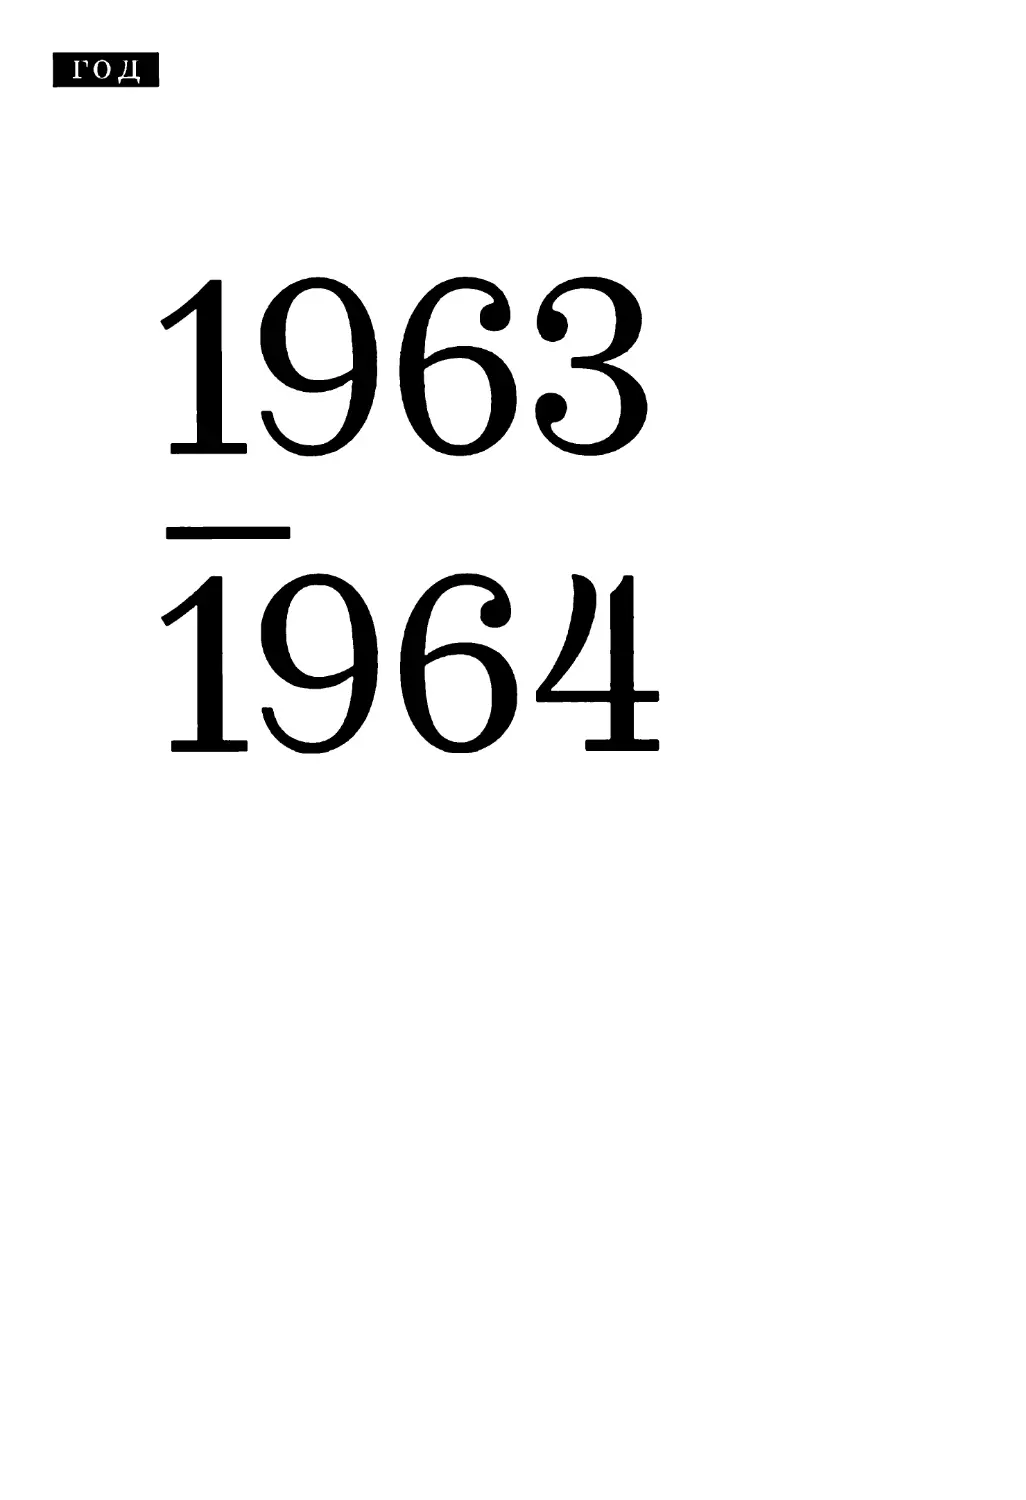 1963-1964